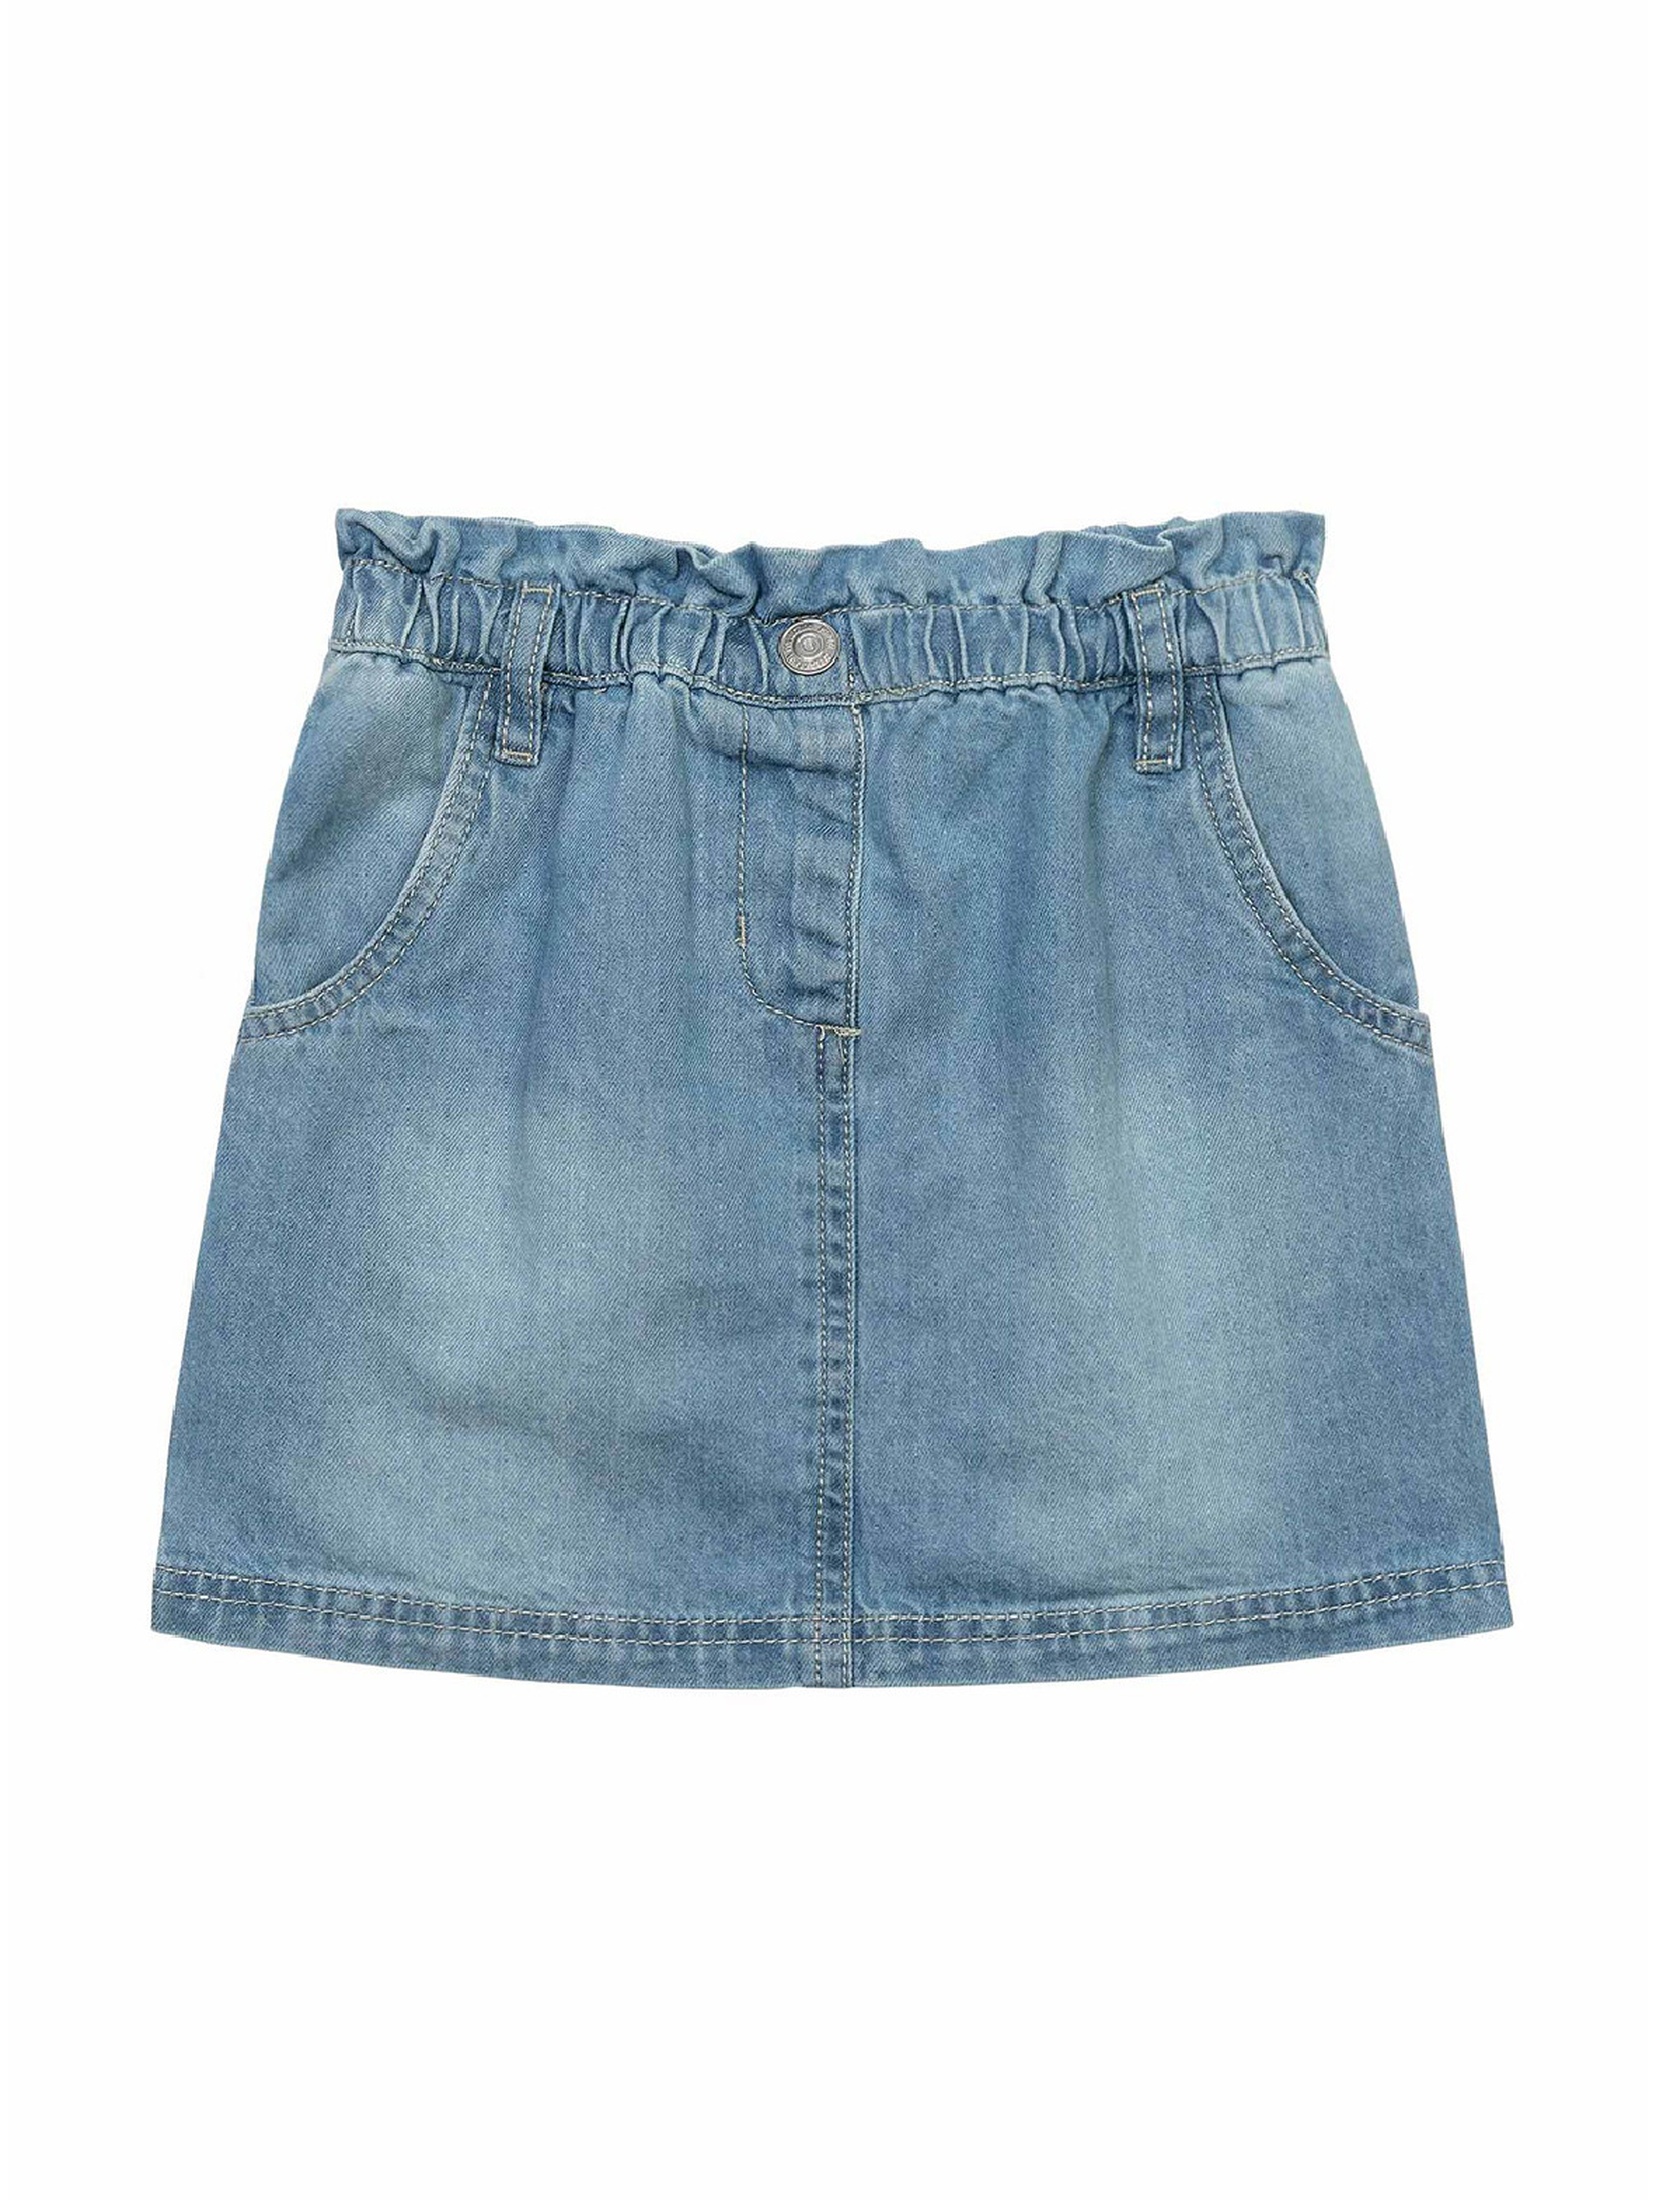 Krótka spódniczka jeansowa z falbanką dla dziewczynki